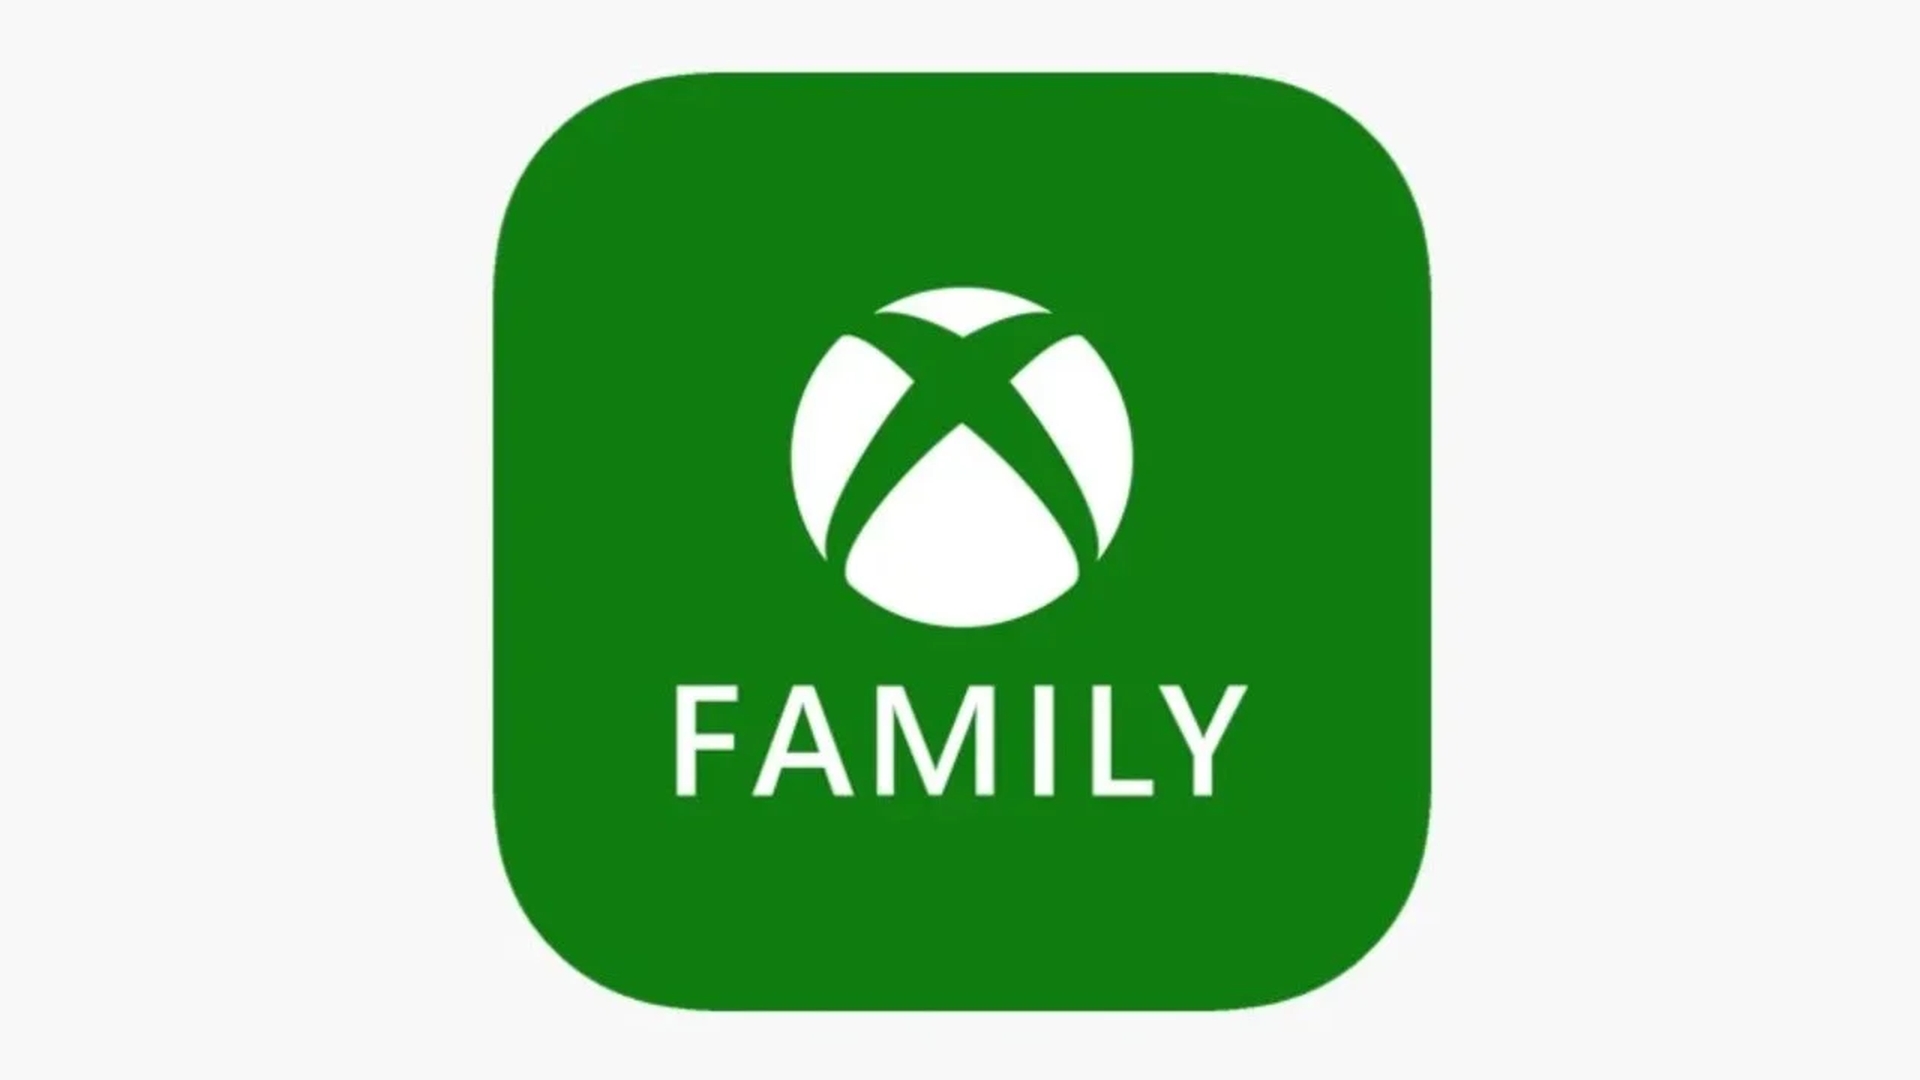 Сегодня мы расскажем о семейном плане Xbox Game Pass, который в настоящее время тестируется Microsoft и упростит обмен подписками.